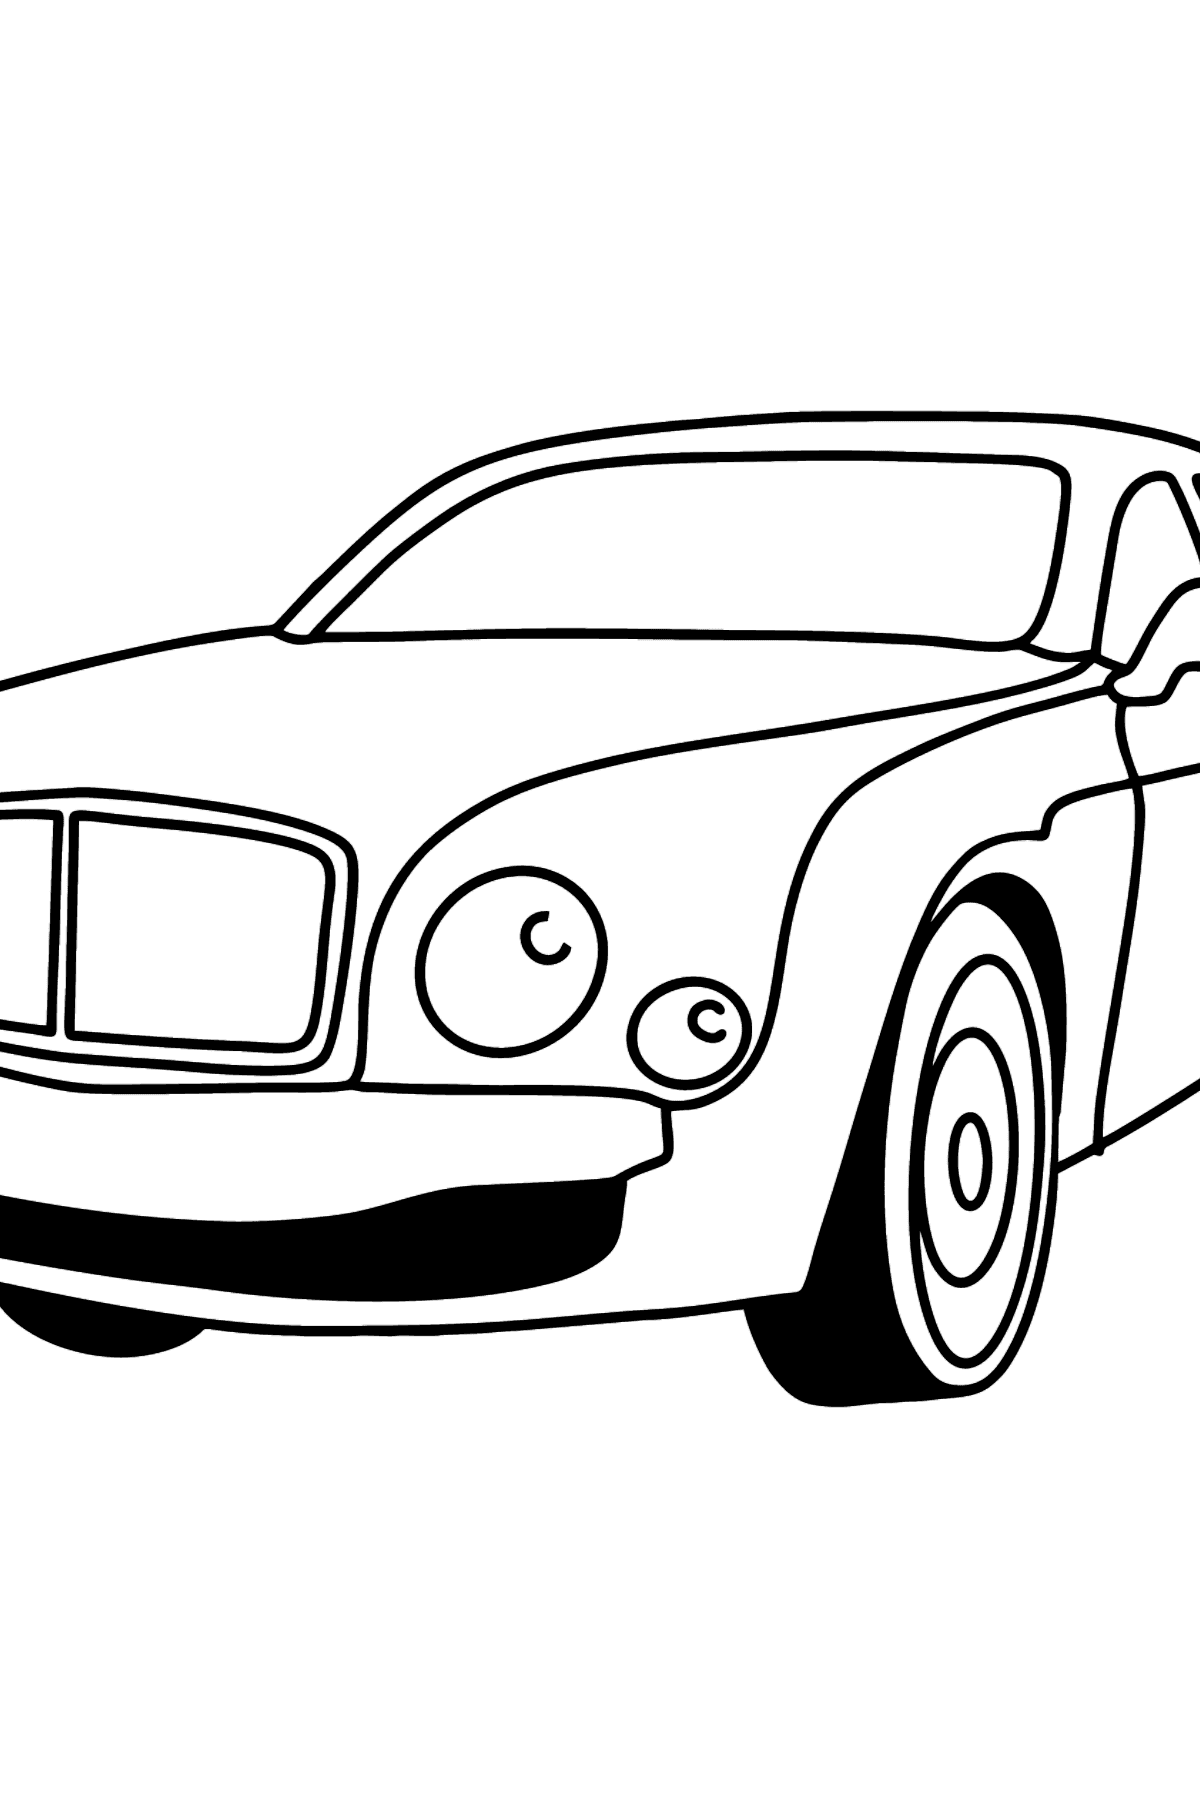 Mewarnai gambar mobil Bentley - Mewarnai gambar untuk anak-anak